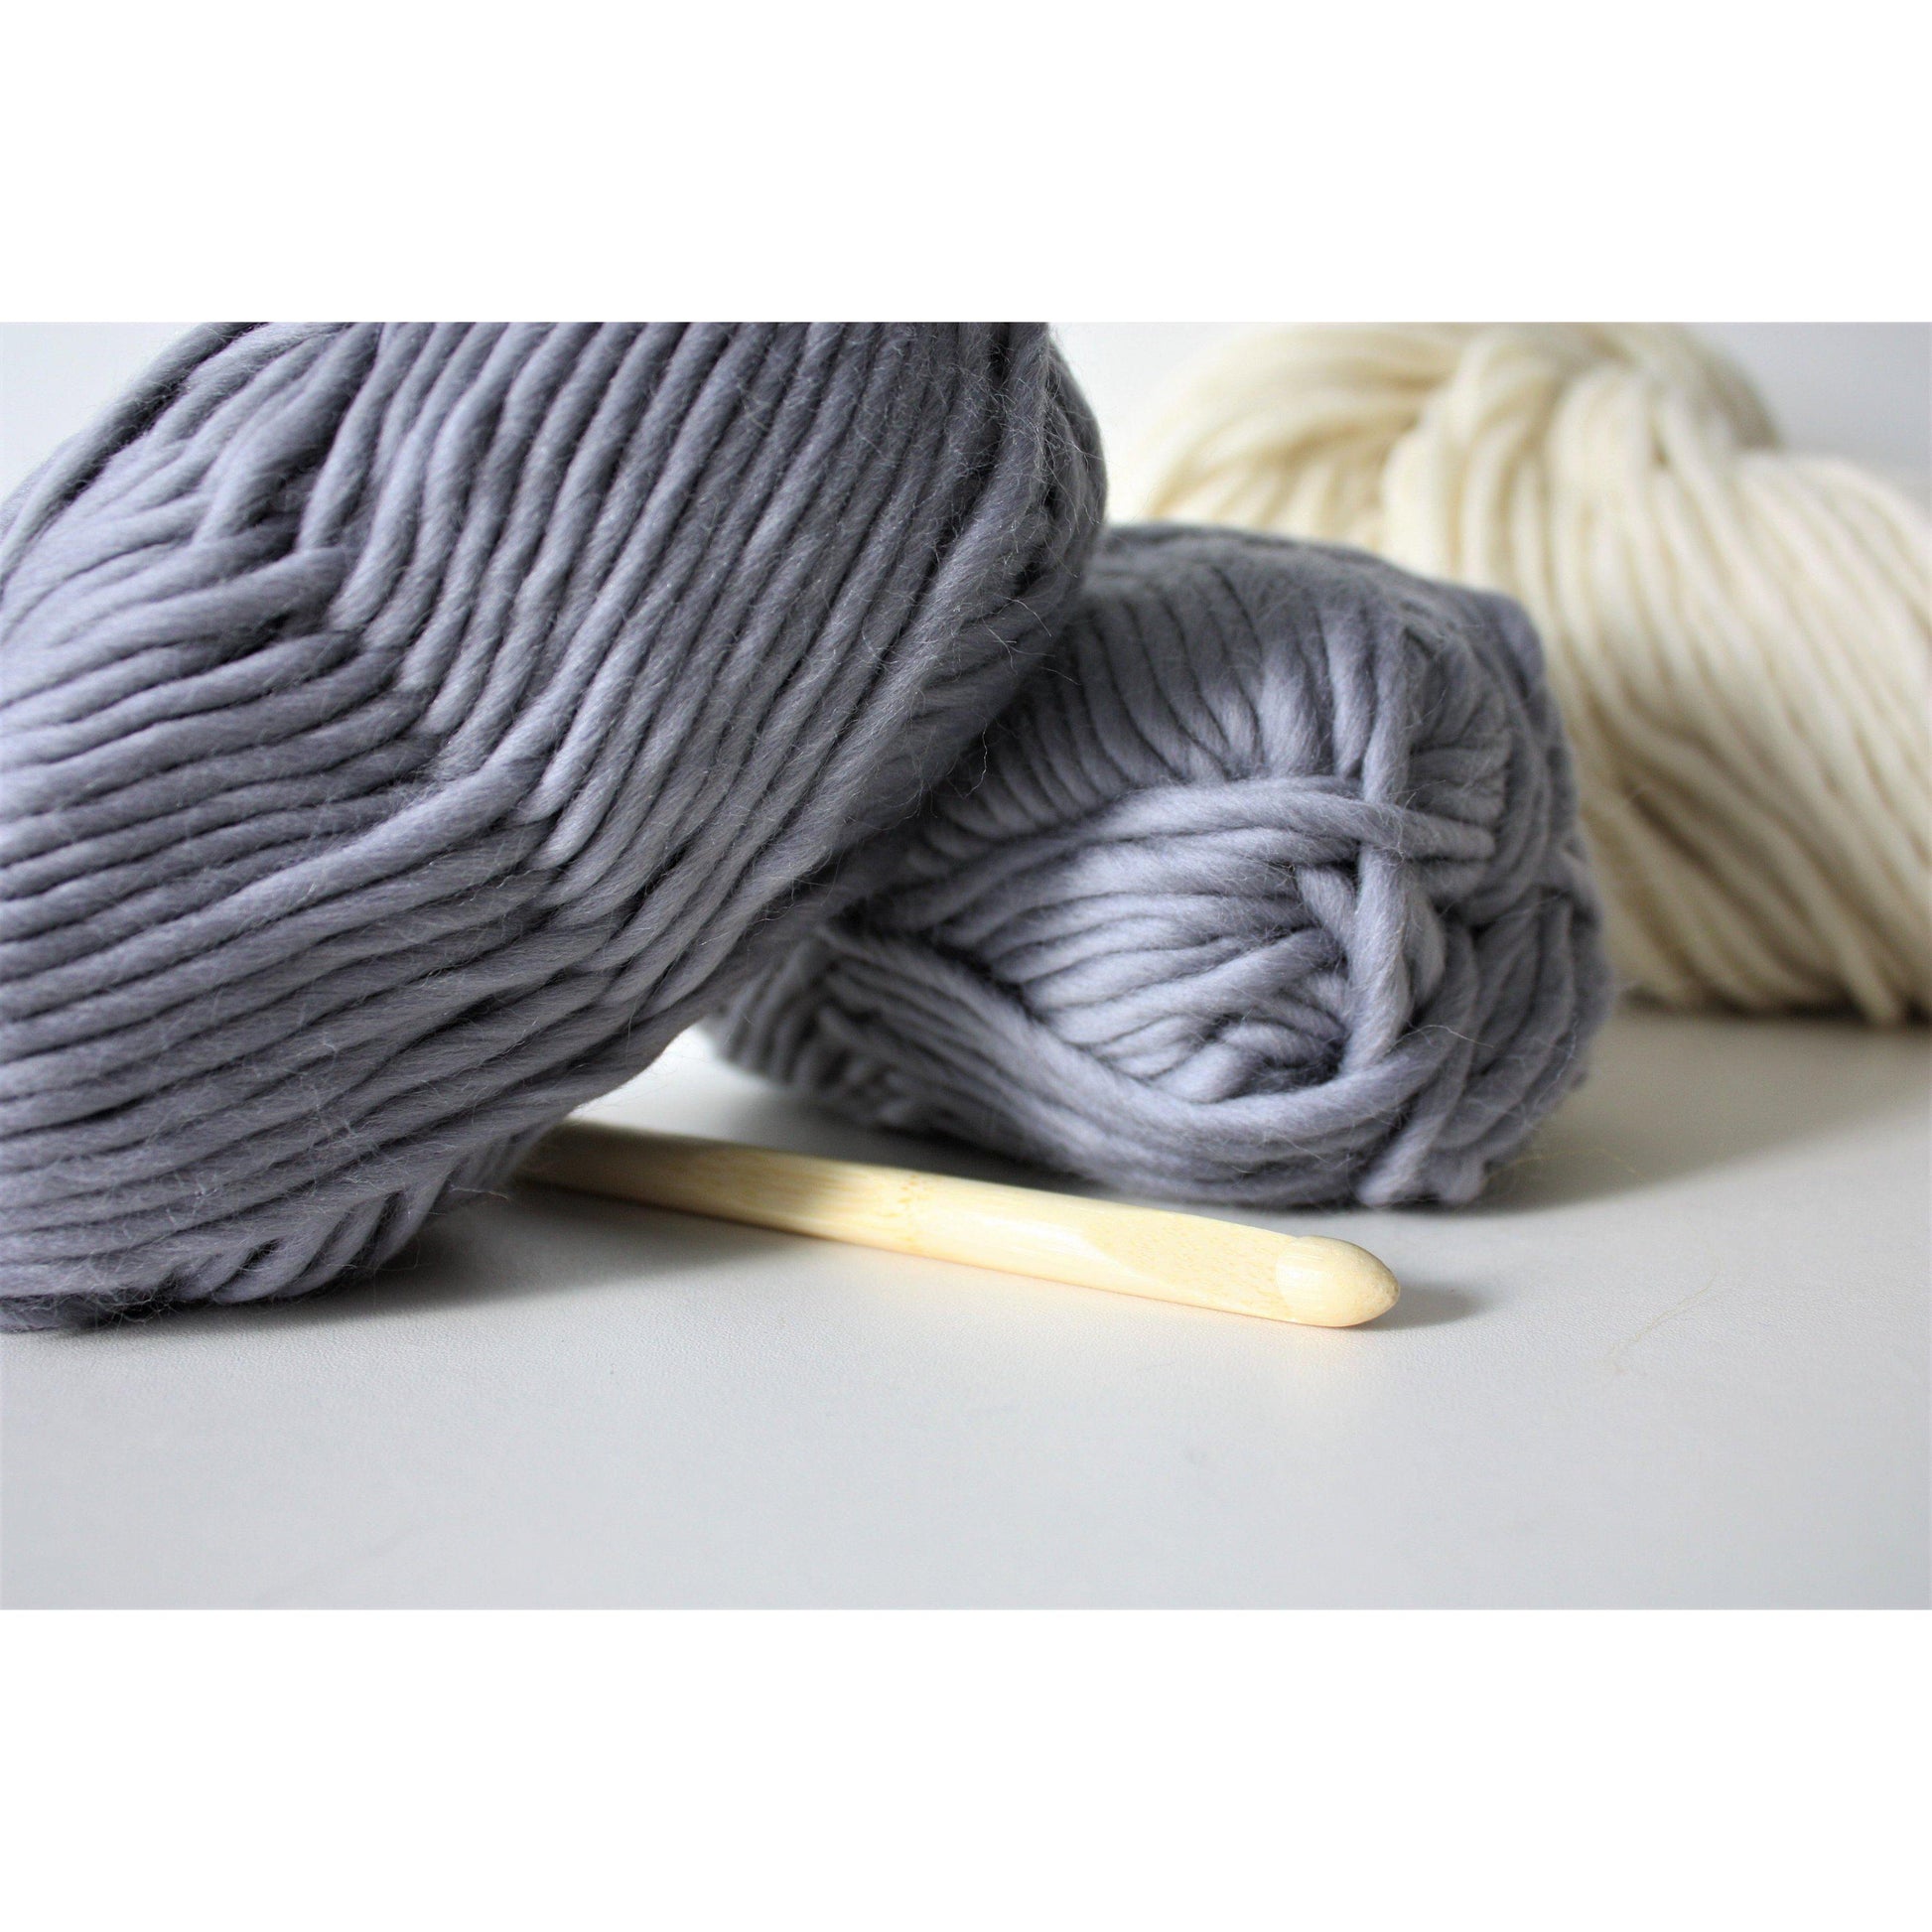 Super Chunky Pure Merino Wool Knitting Yarn - Olive Green - King & Eye